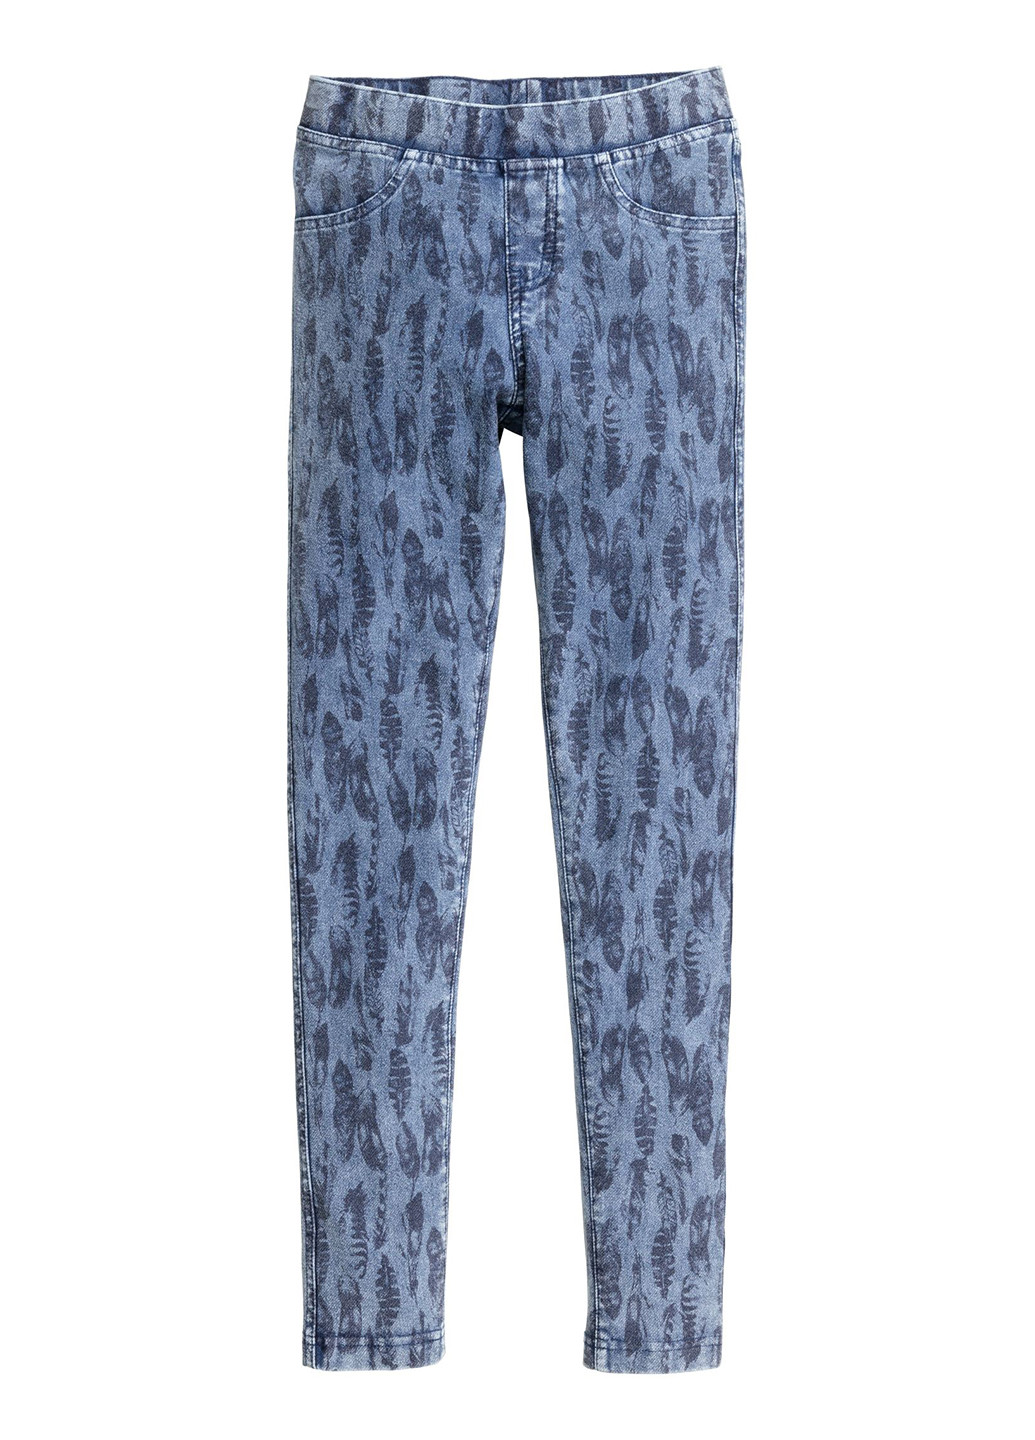 Джеггінси H&M орнаменти сині джинсові бавовна